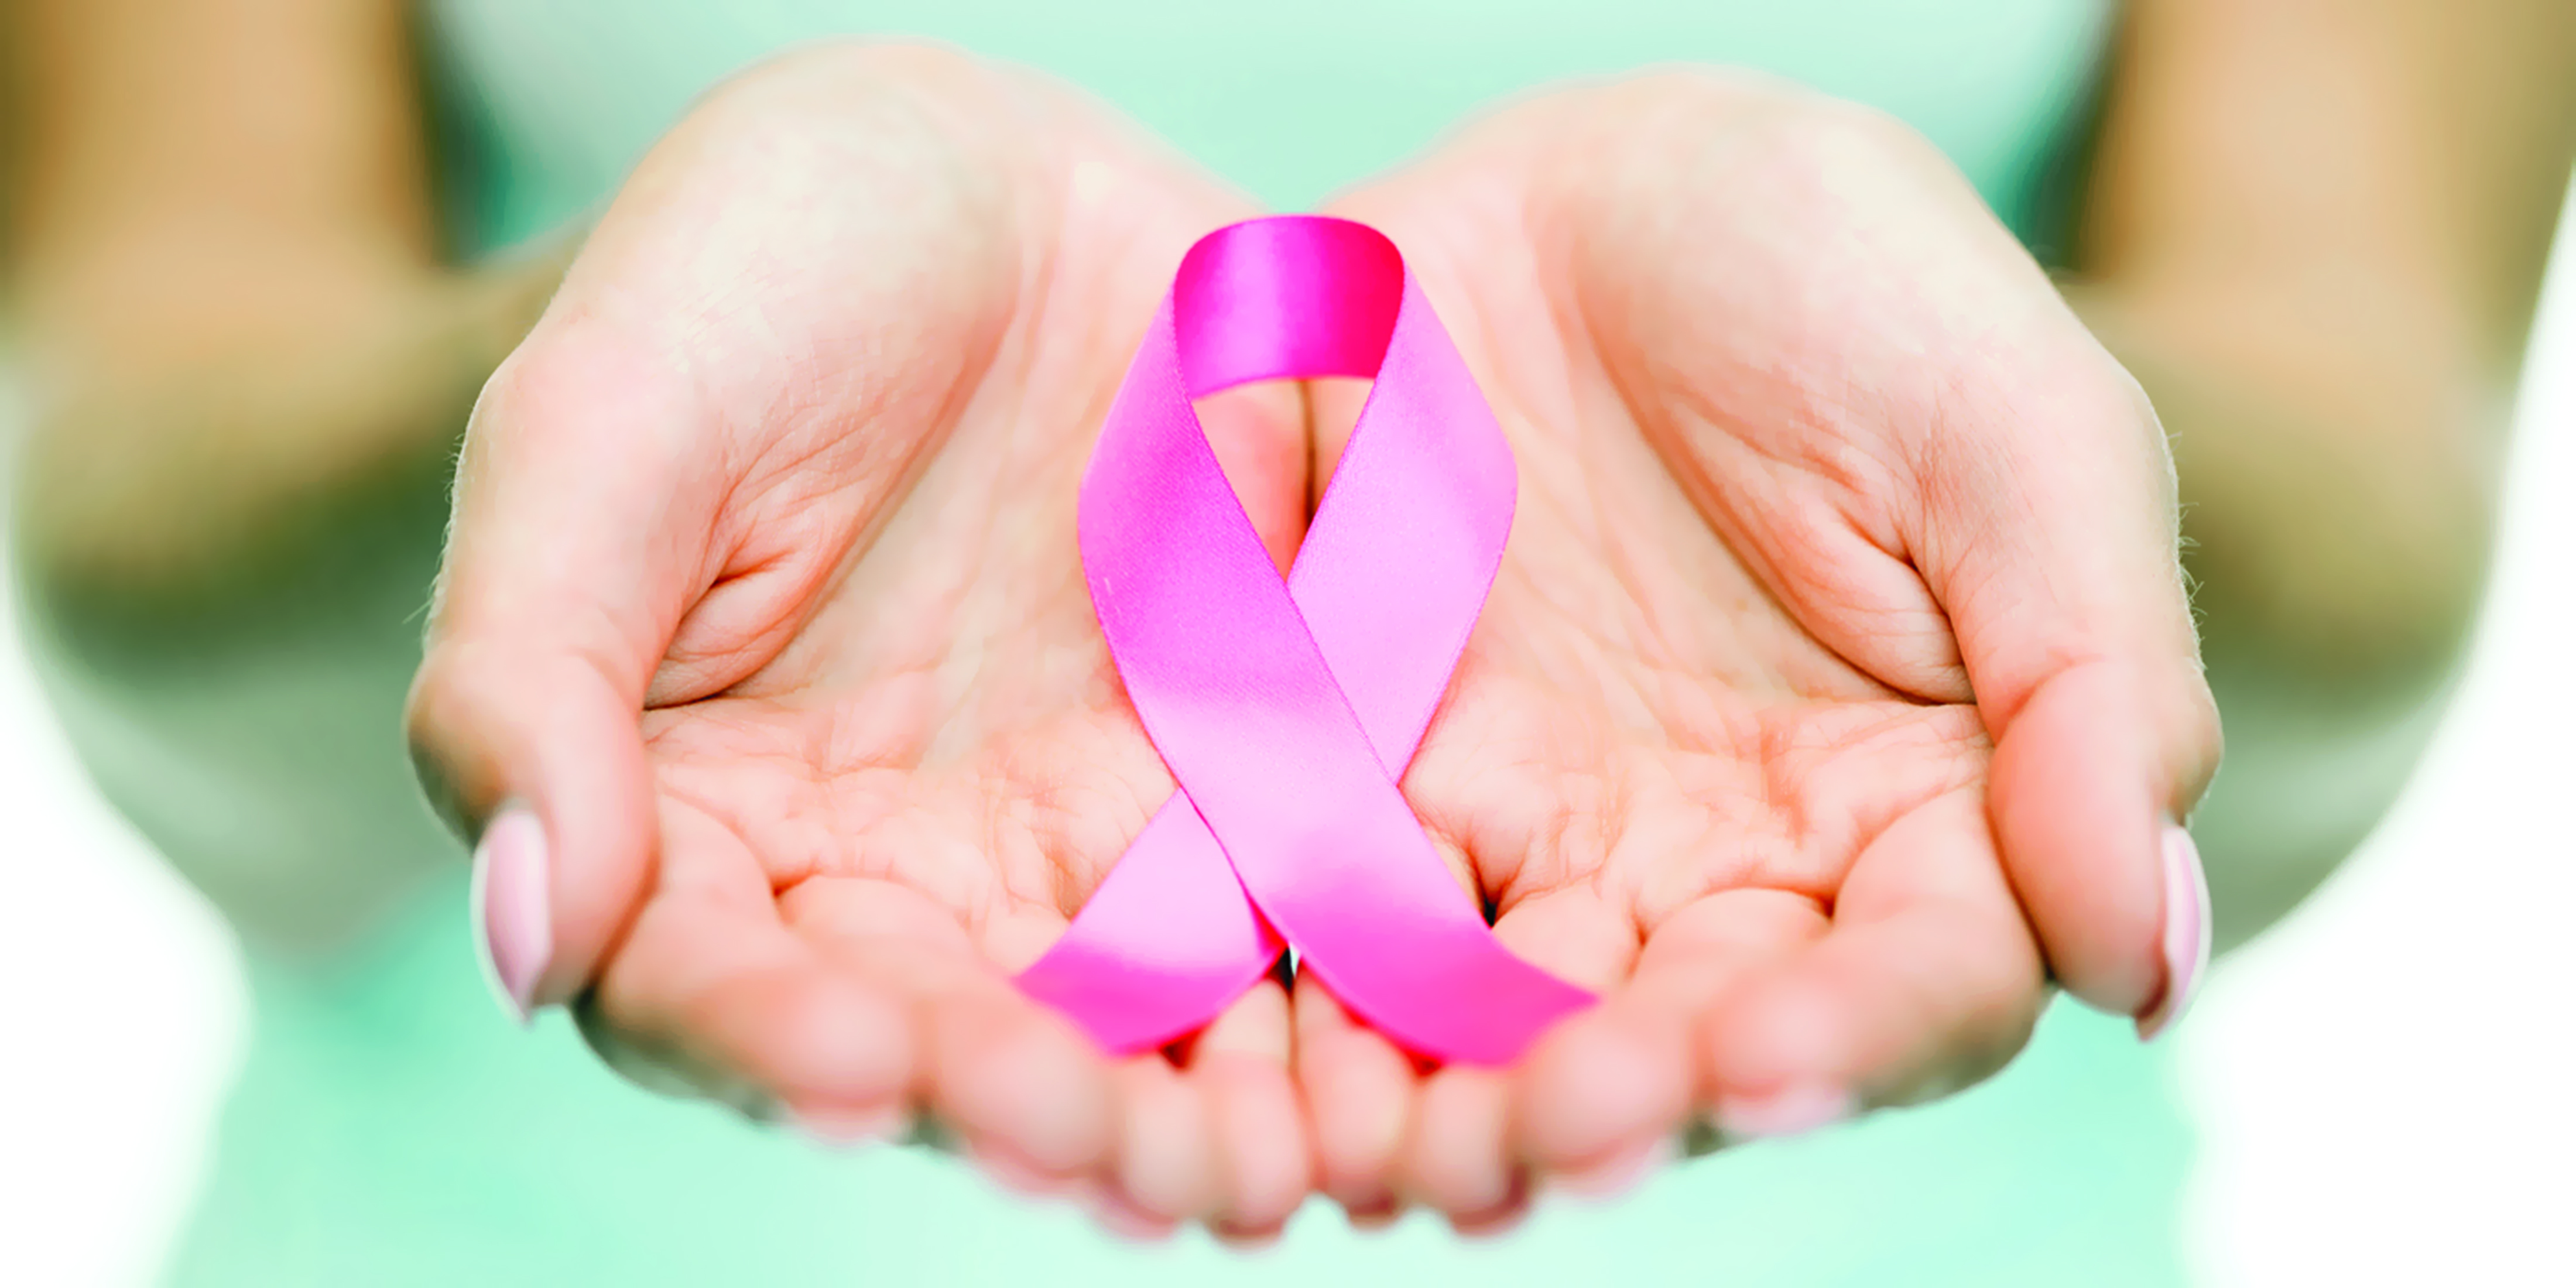 الكشف المبكرالوسيلة الأمثلللوقاية من سرطان الثدي